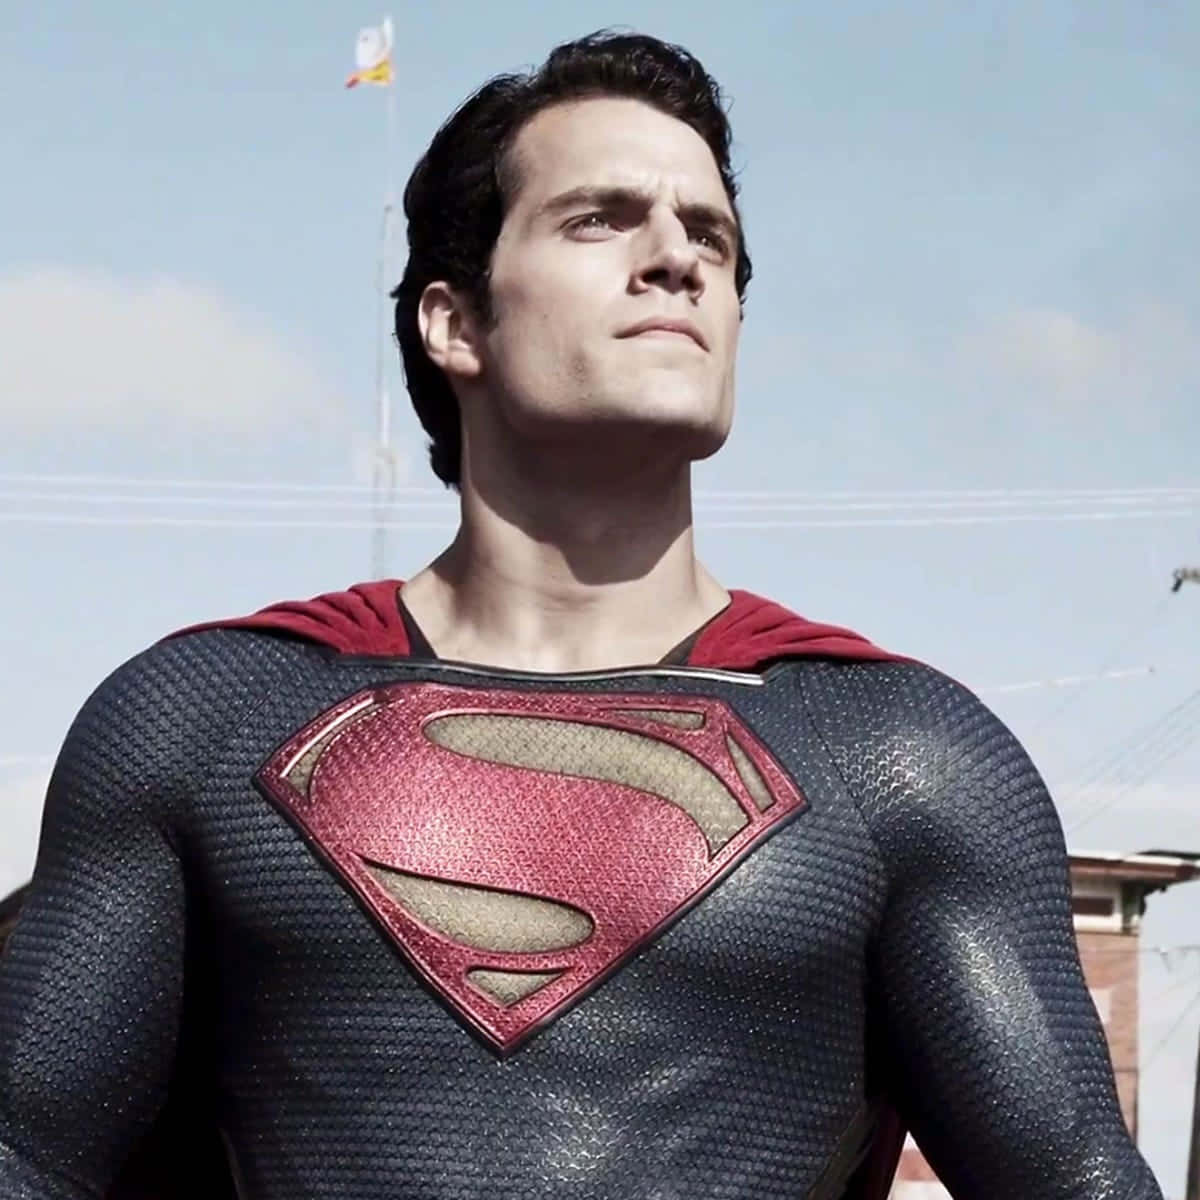 Supermaner En Ikonisk Superhelt, Klar Til At Forsvare Menneskeheden Mod Det Onde.